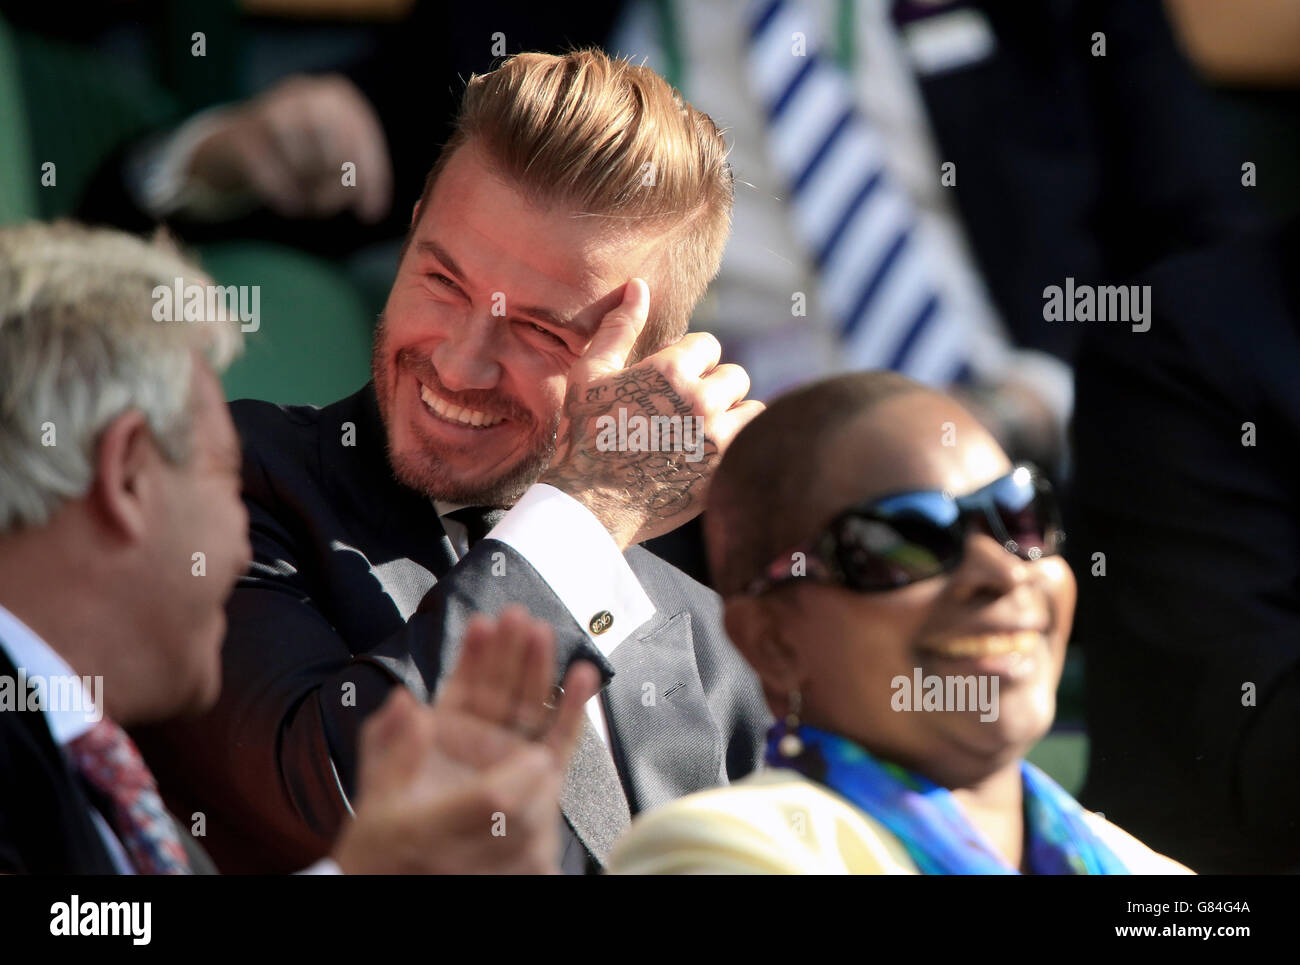 David Beckham nella scatola reale durante il giorno dieci dei campionati di Wimbledon all'All England Lawn Tennis and Croquet Club, Wimbledon. Data foto: Giovedì 9 luglio 2015. Vedi la storia del PA TENNIS Wimbledon. Il credito fotografico dovrebbe essere: Mike Egerton/PA Wire. Foto Stock